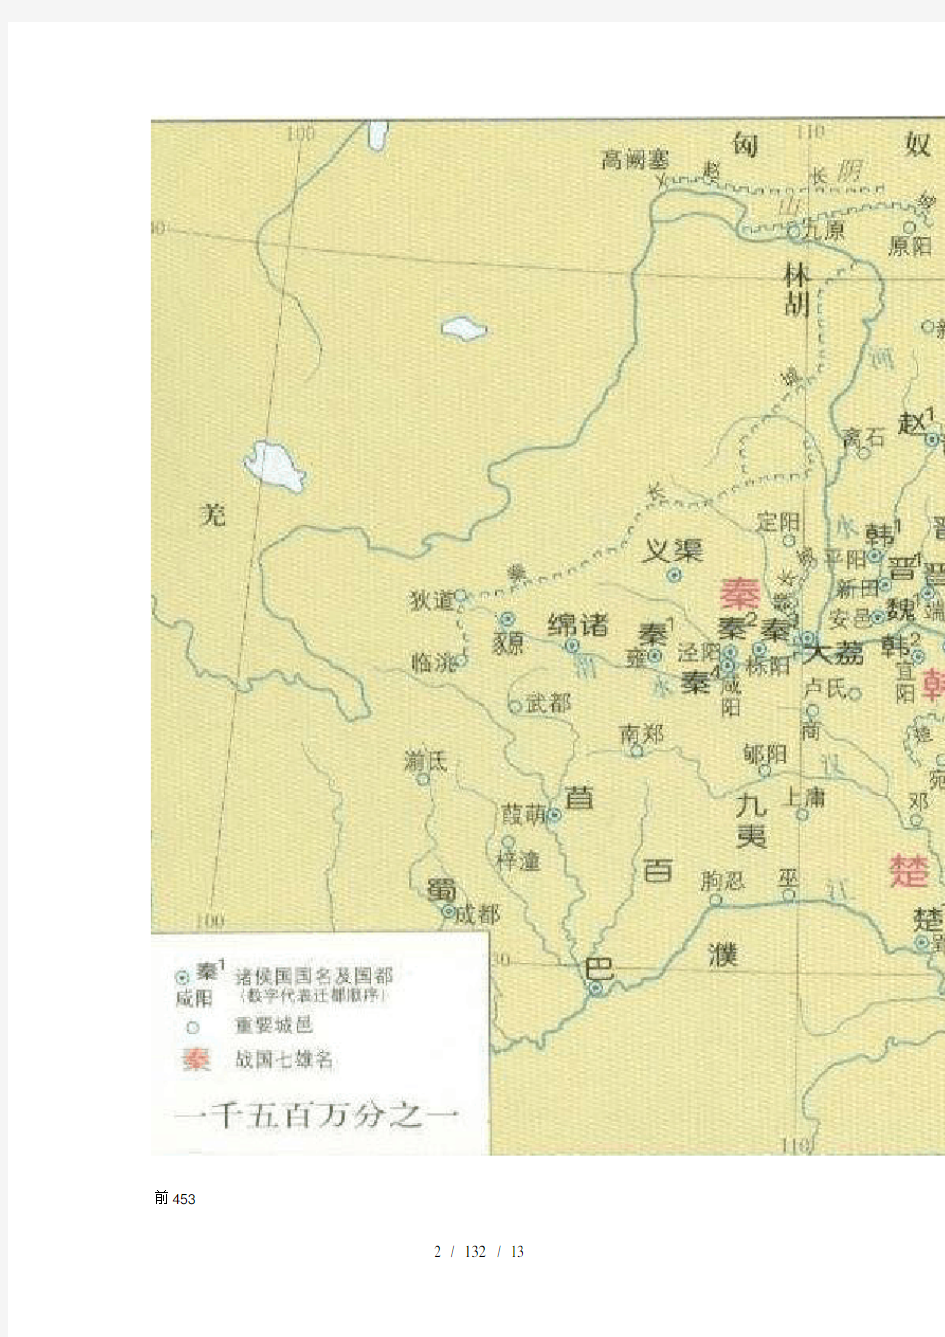 春秋战国详细地图战国时期